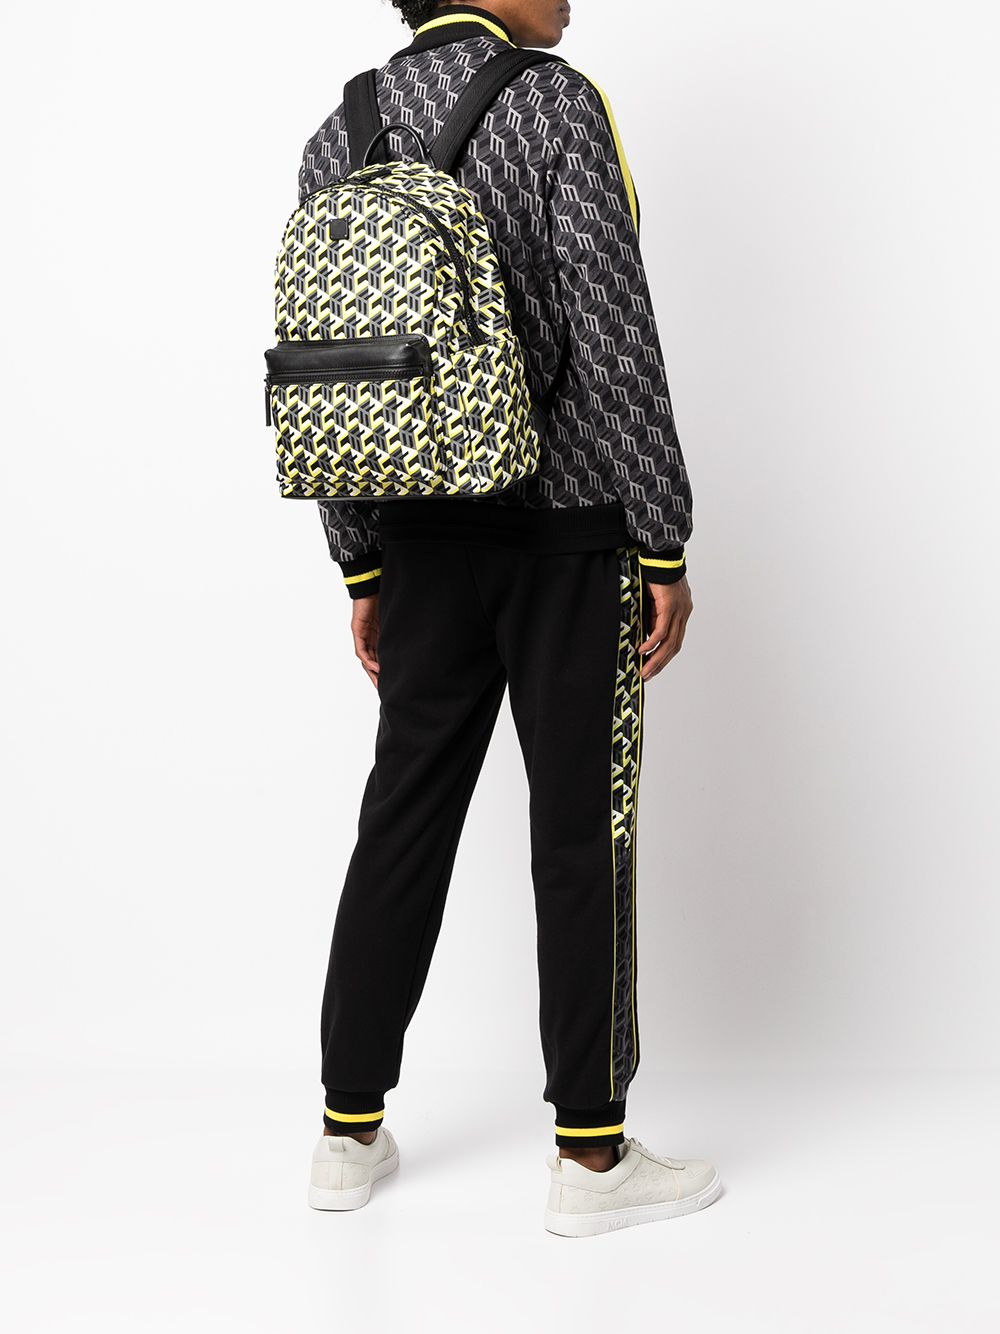 Mcm Women's Stark Backpack in Cubic Jacquard Nylon - Black - Backpacks